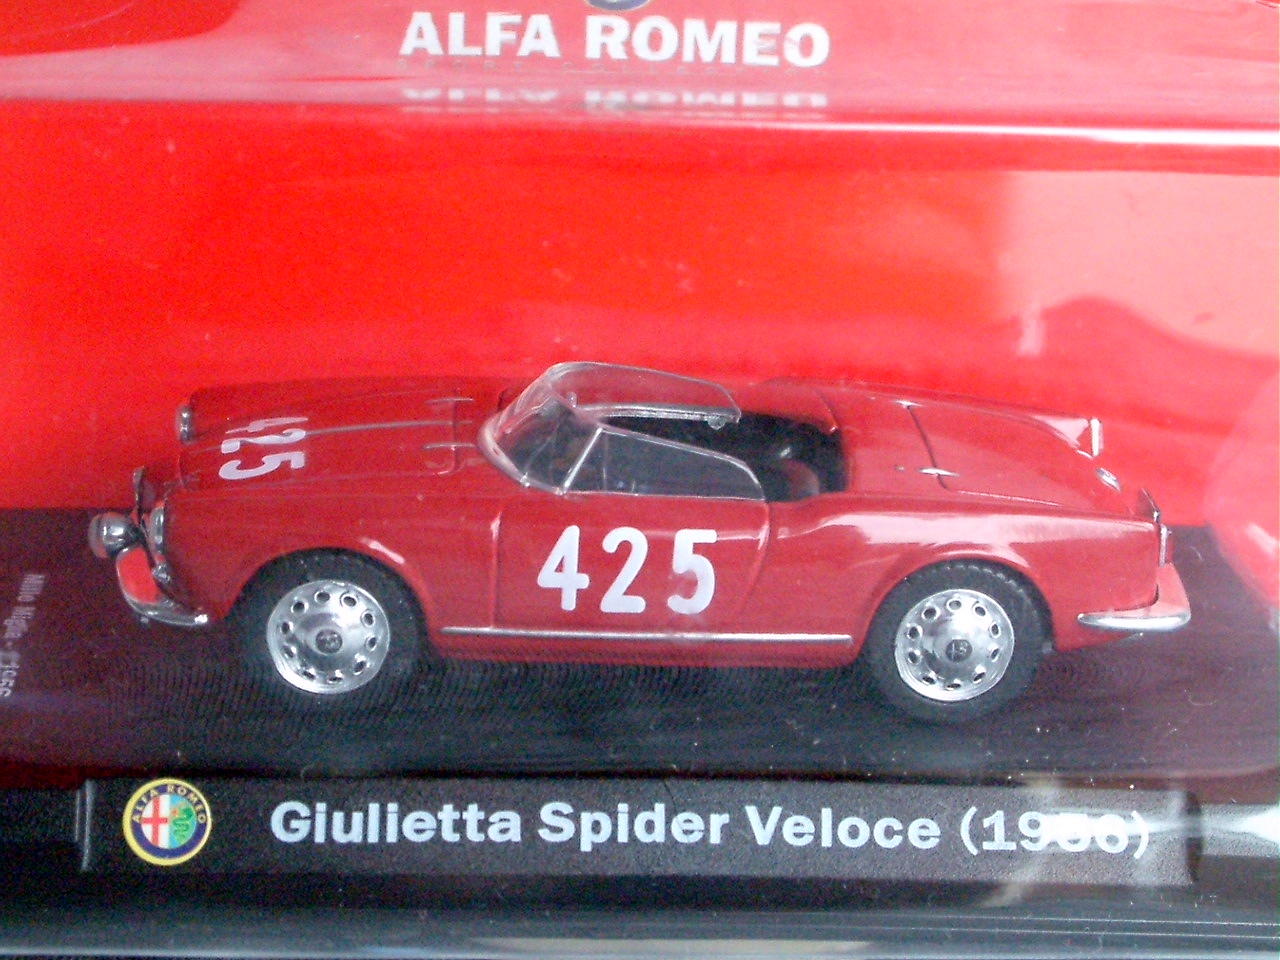 Alfa Romeo Giulietta Spider Veloce Mille Miglia 1956